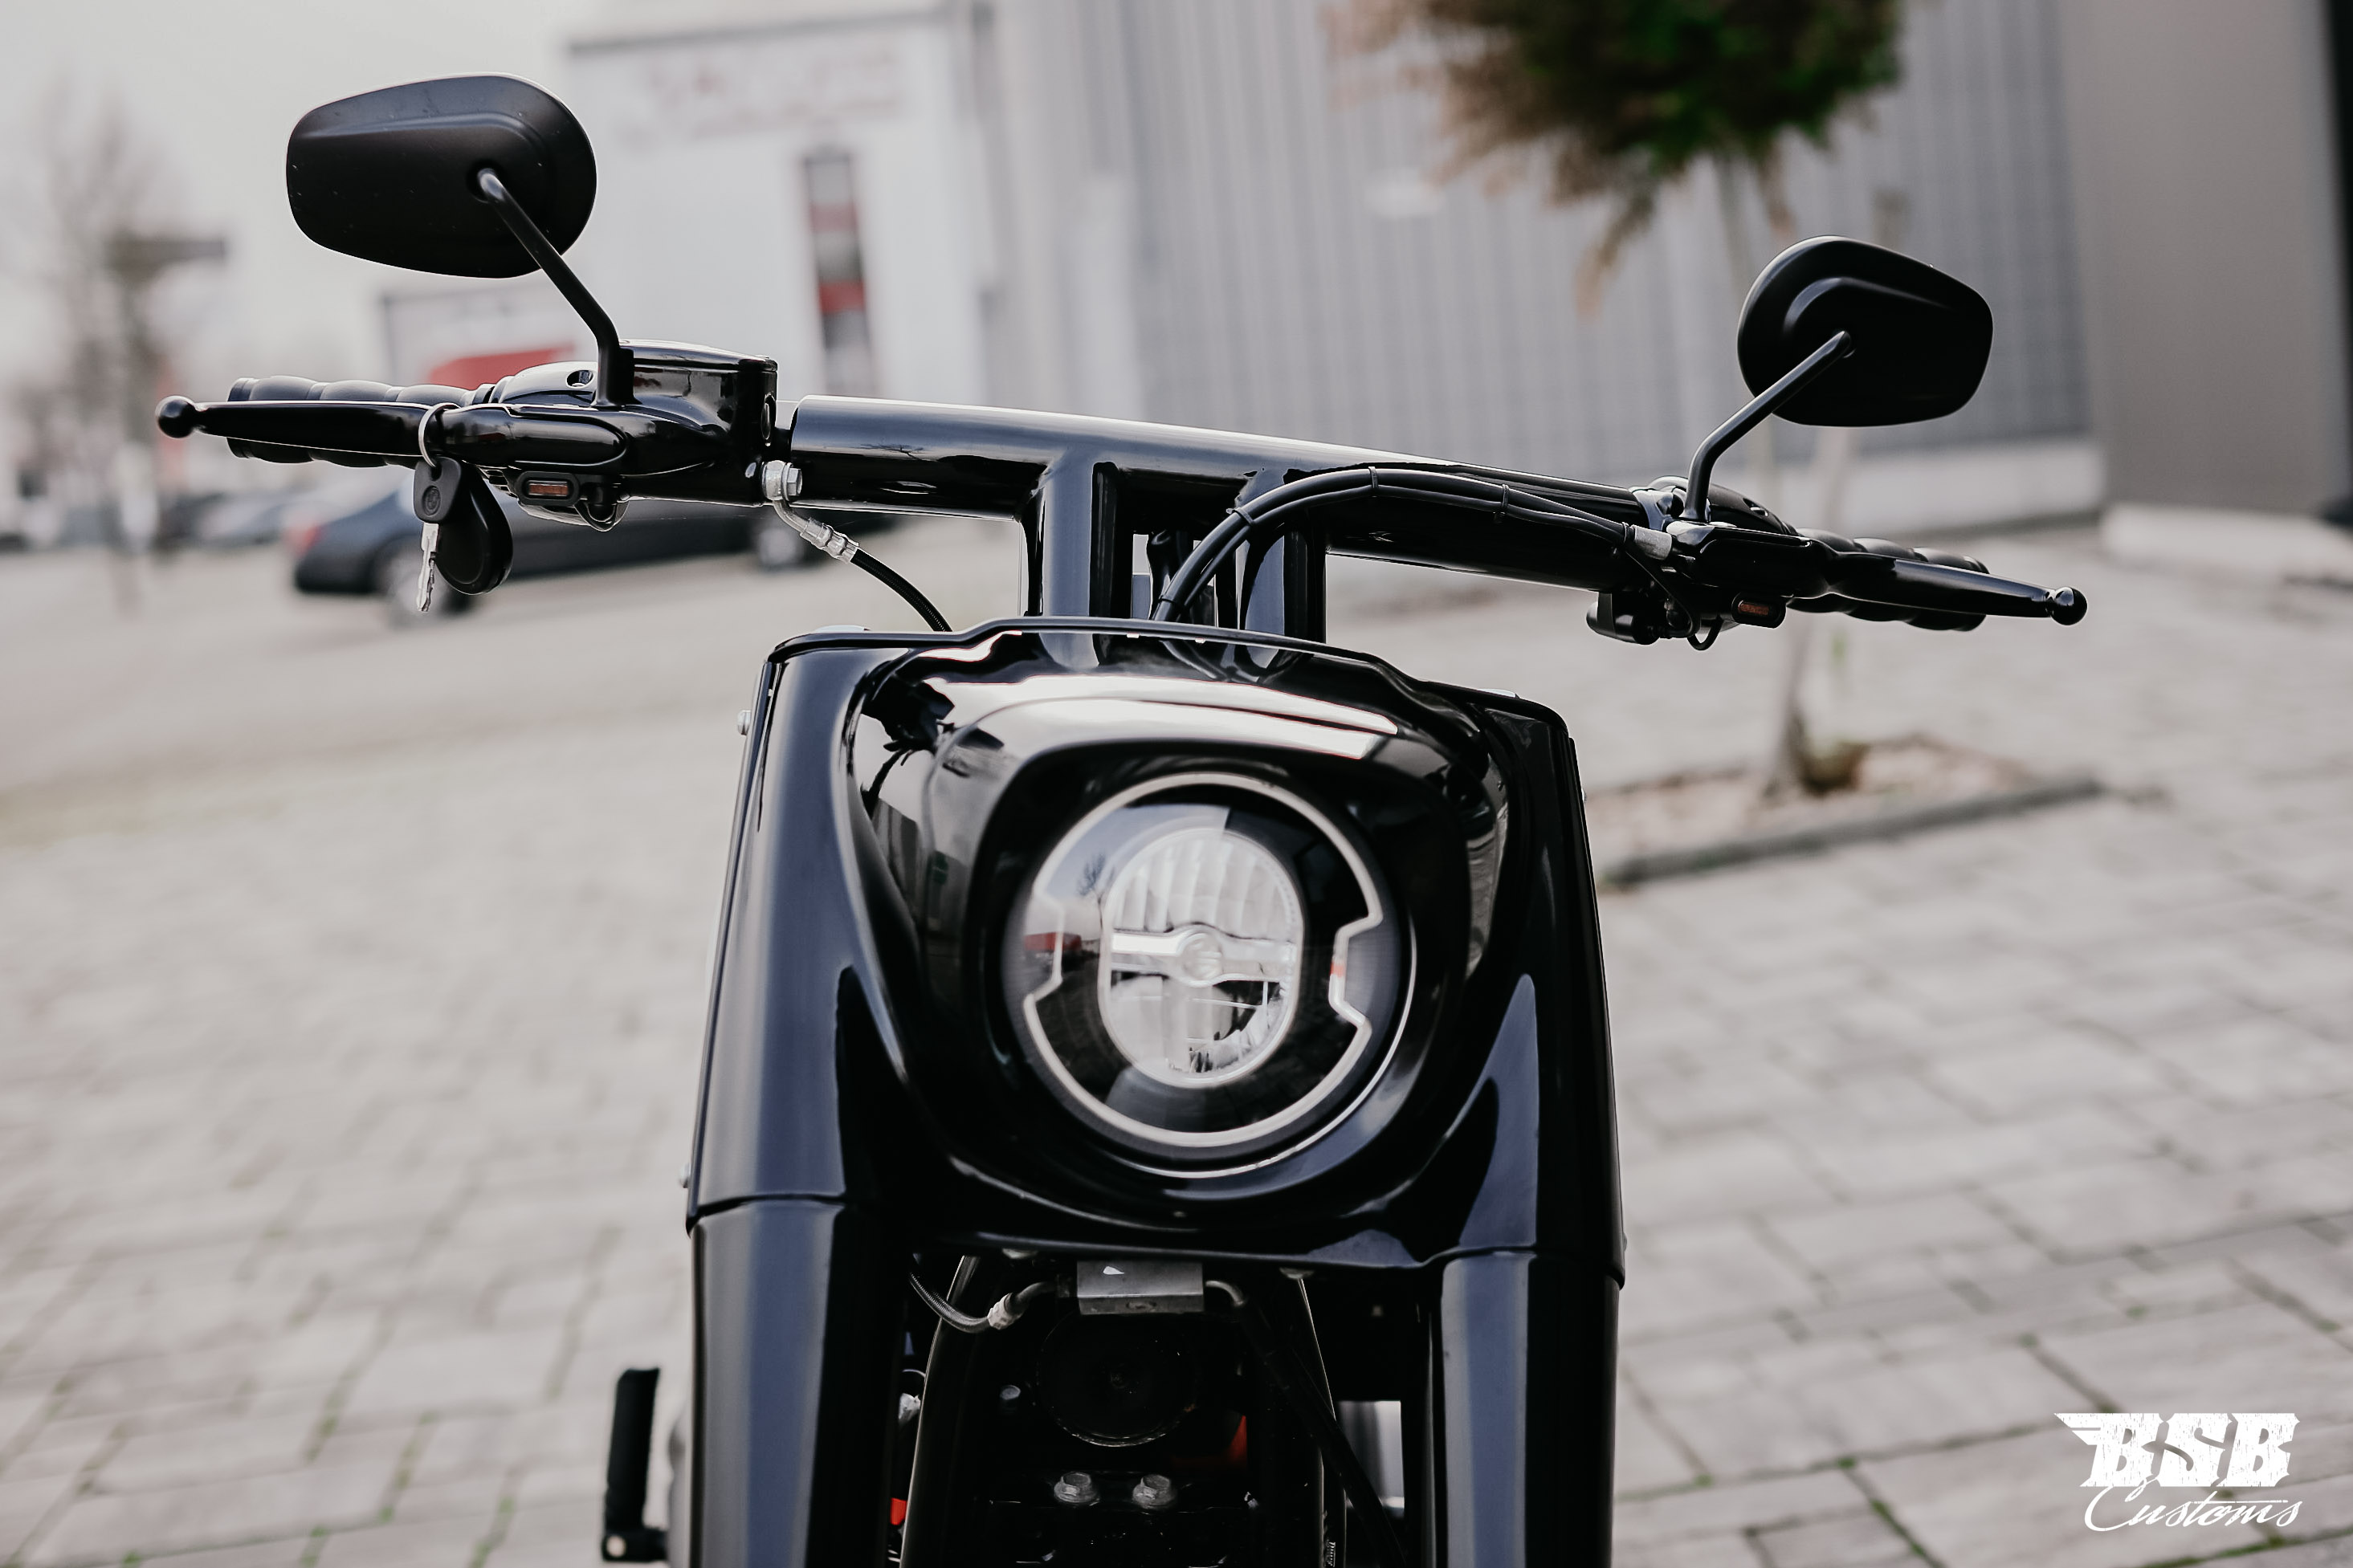 2019 Harley Davidson FAT BOY 107 CUI mit Umbau // Jekill // 12 Monate Garantie ab 330 EUR finanzieren*